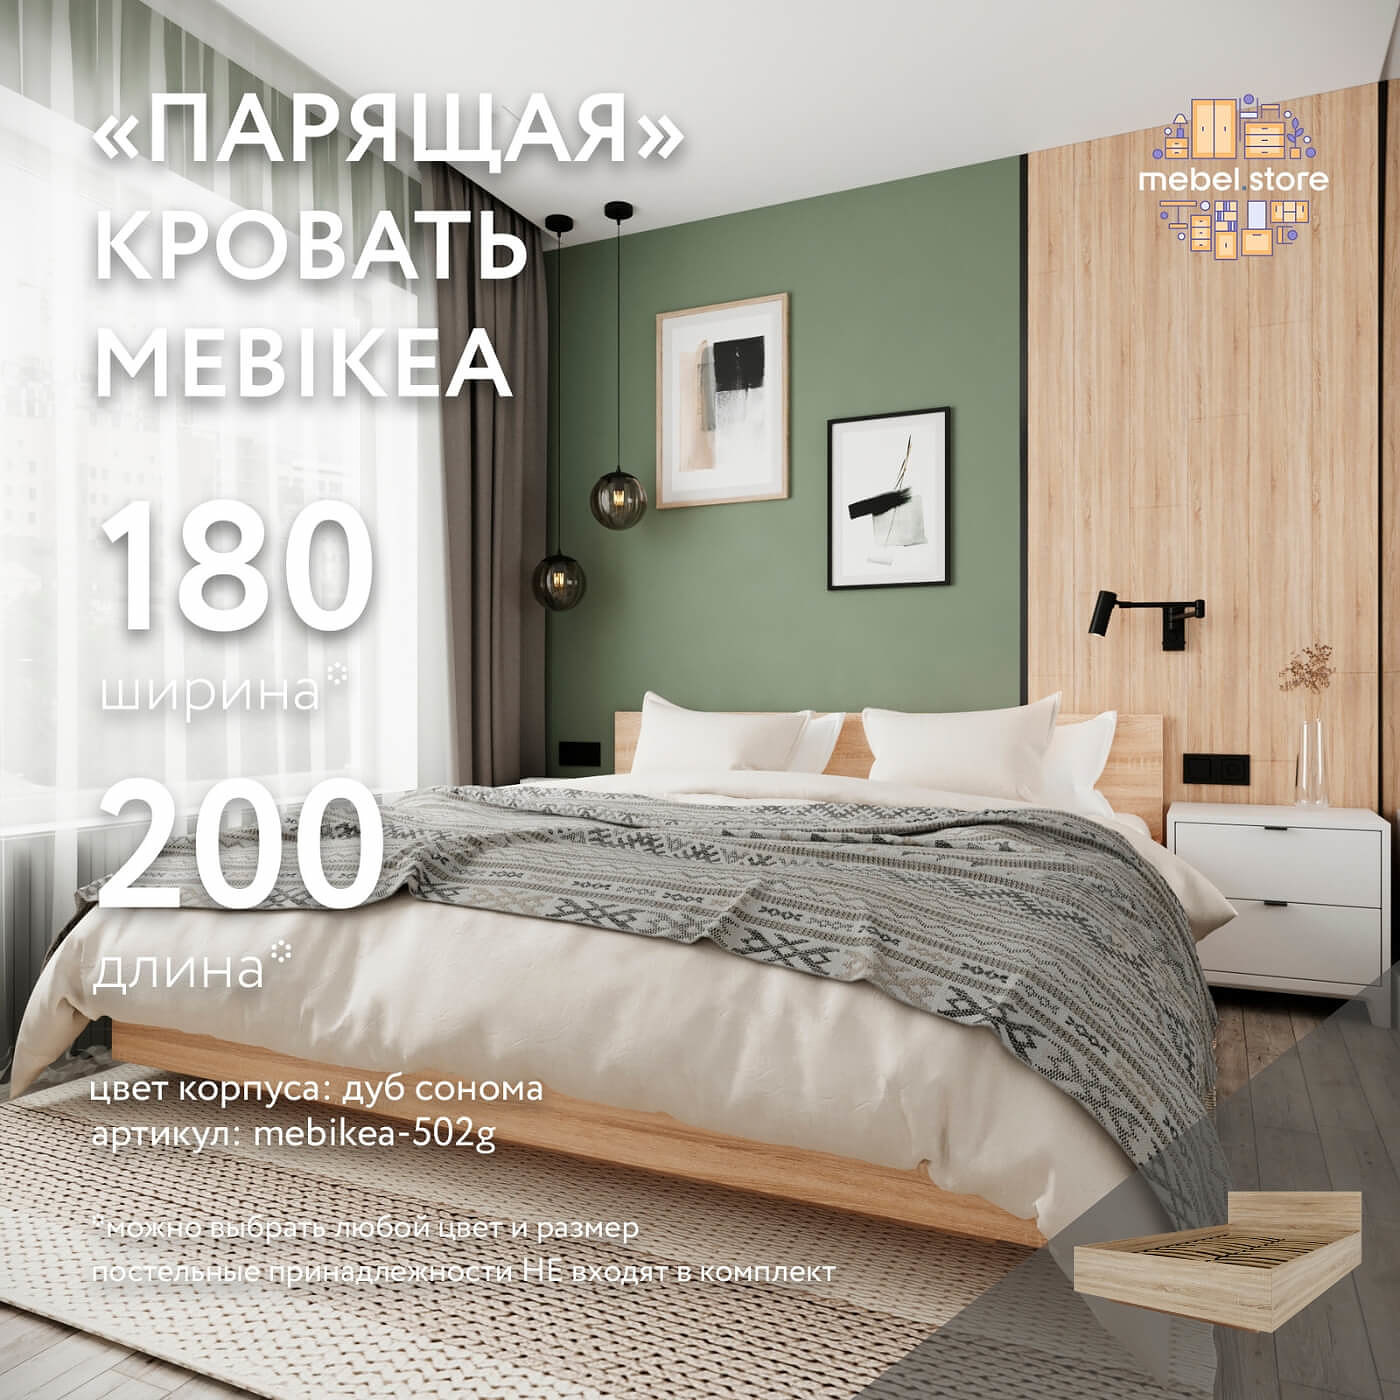 Кровать Mebikea-502g двуспальная минимализм - фото 1 large